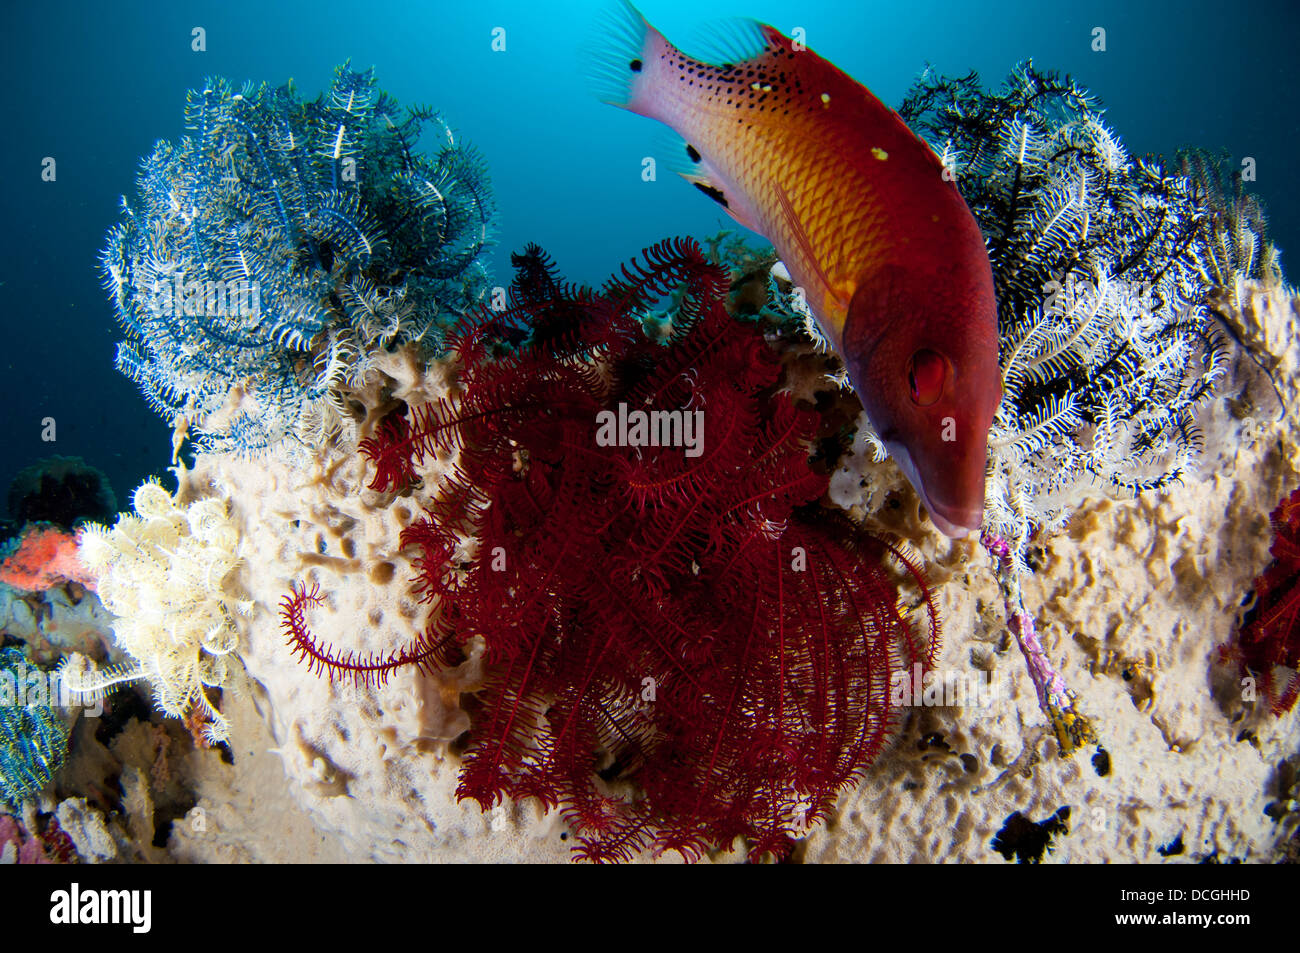 Diana's hogfish (Bodianus diana), swimming between three crinoids, Lembeh Strait, Indonesia. Stock Photo